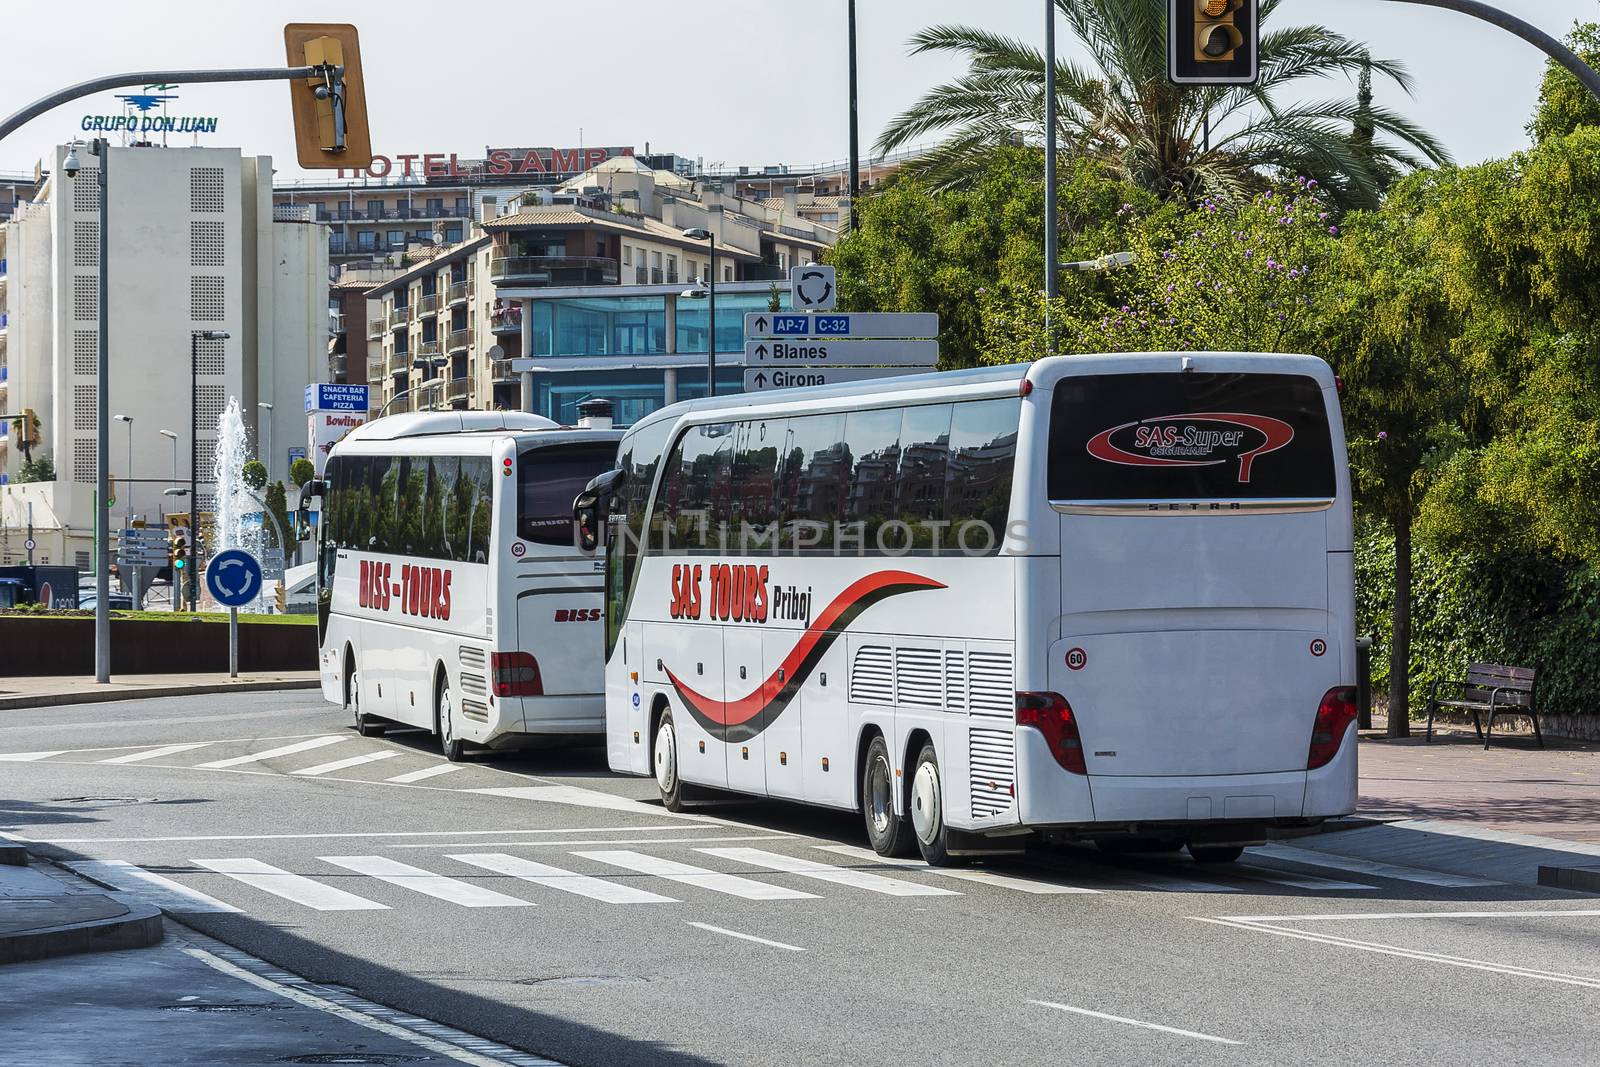 Two bus tour companies BISS TOURS SAS, TOURS (Lloret de Mar, Spa by Grommik